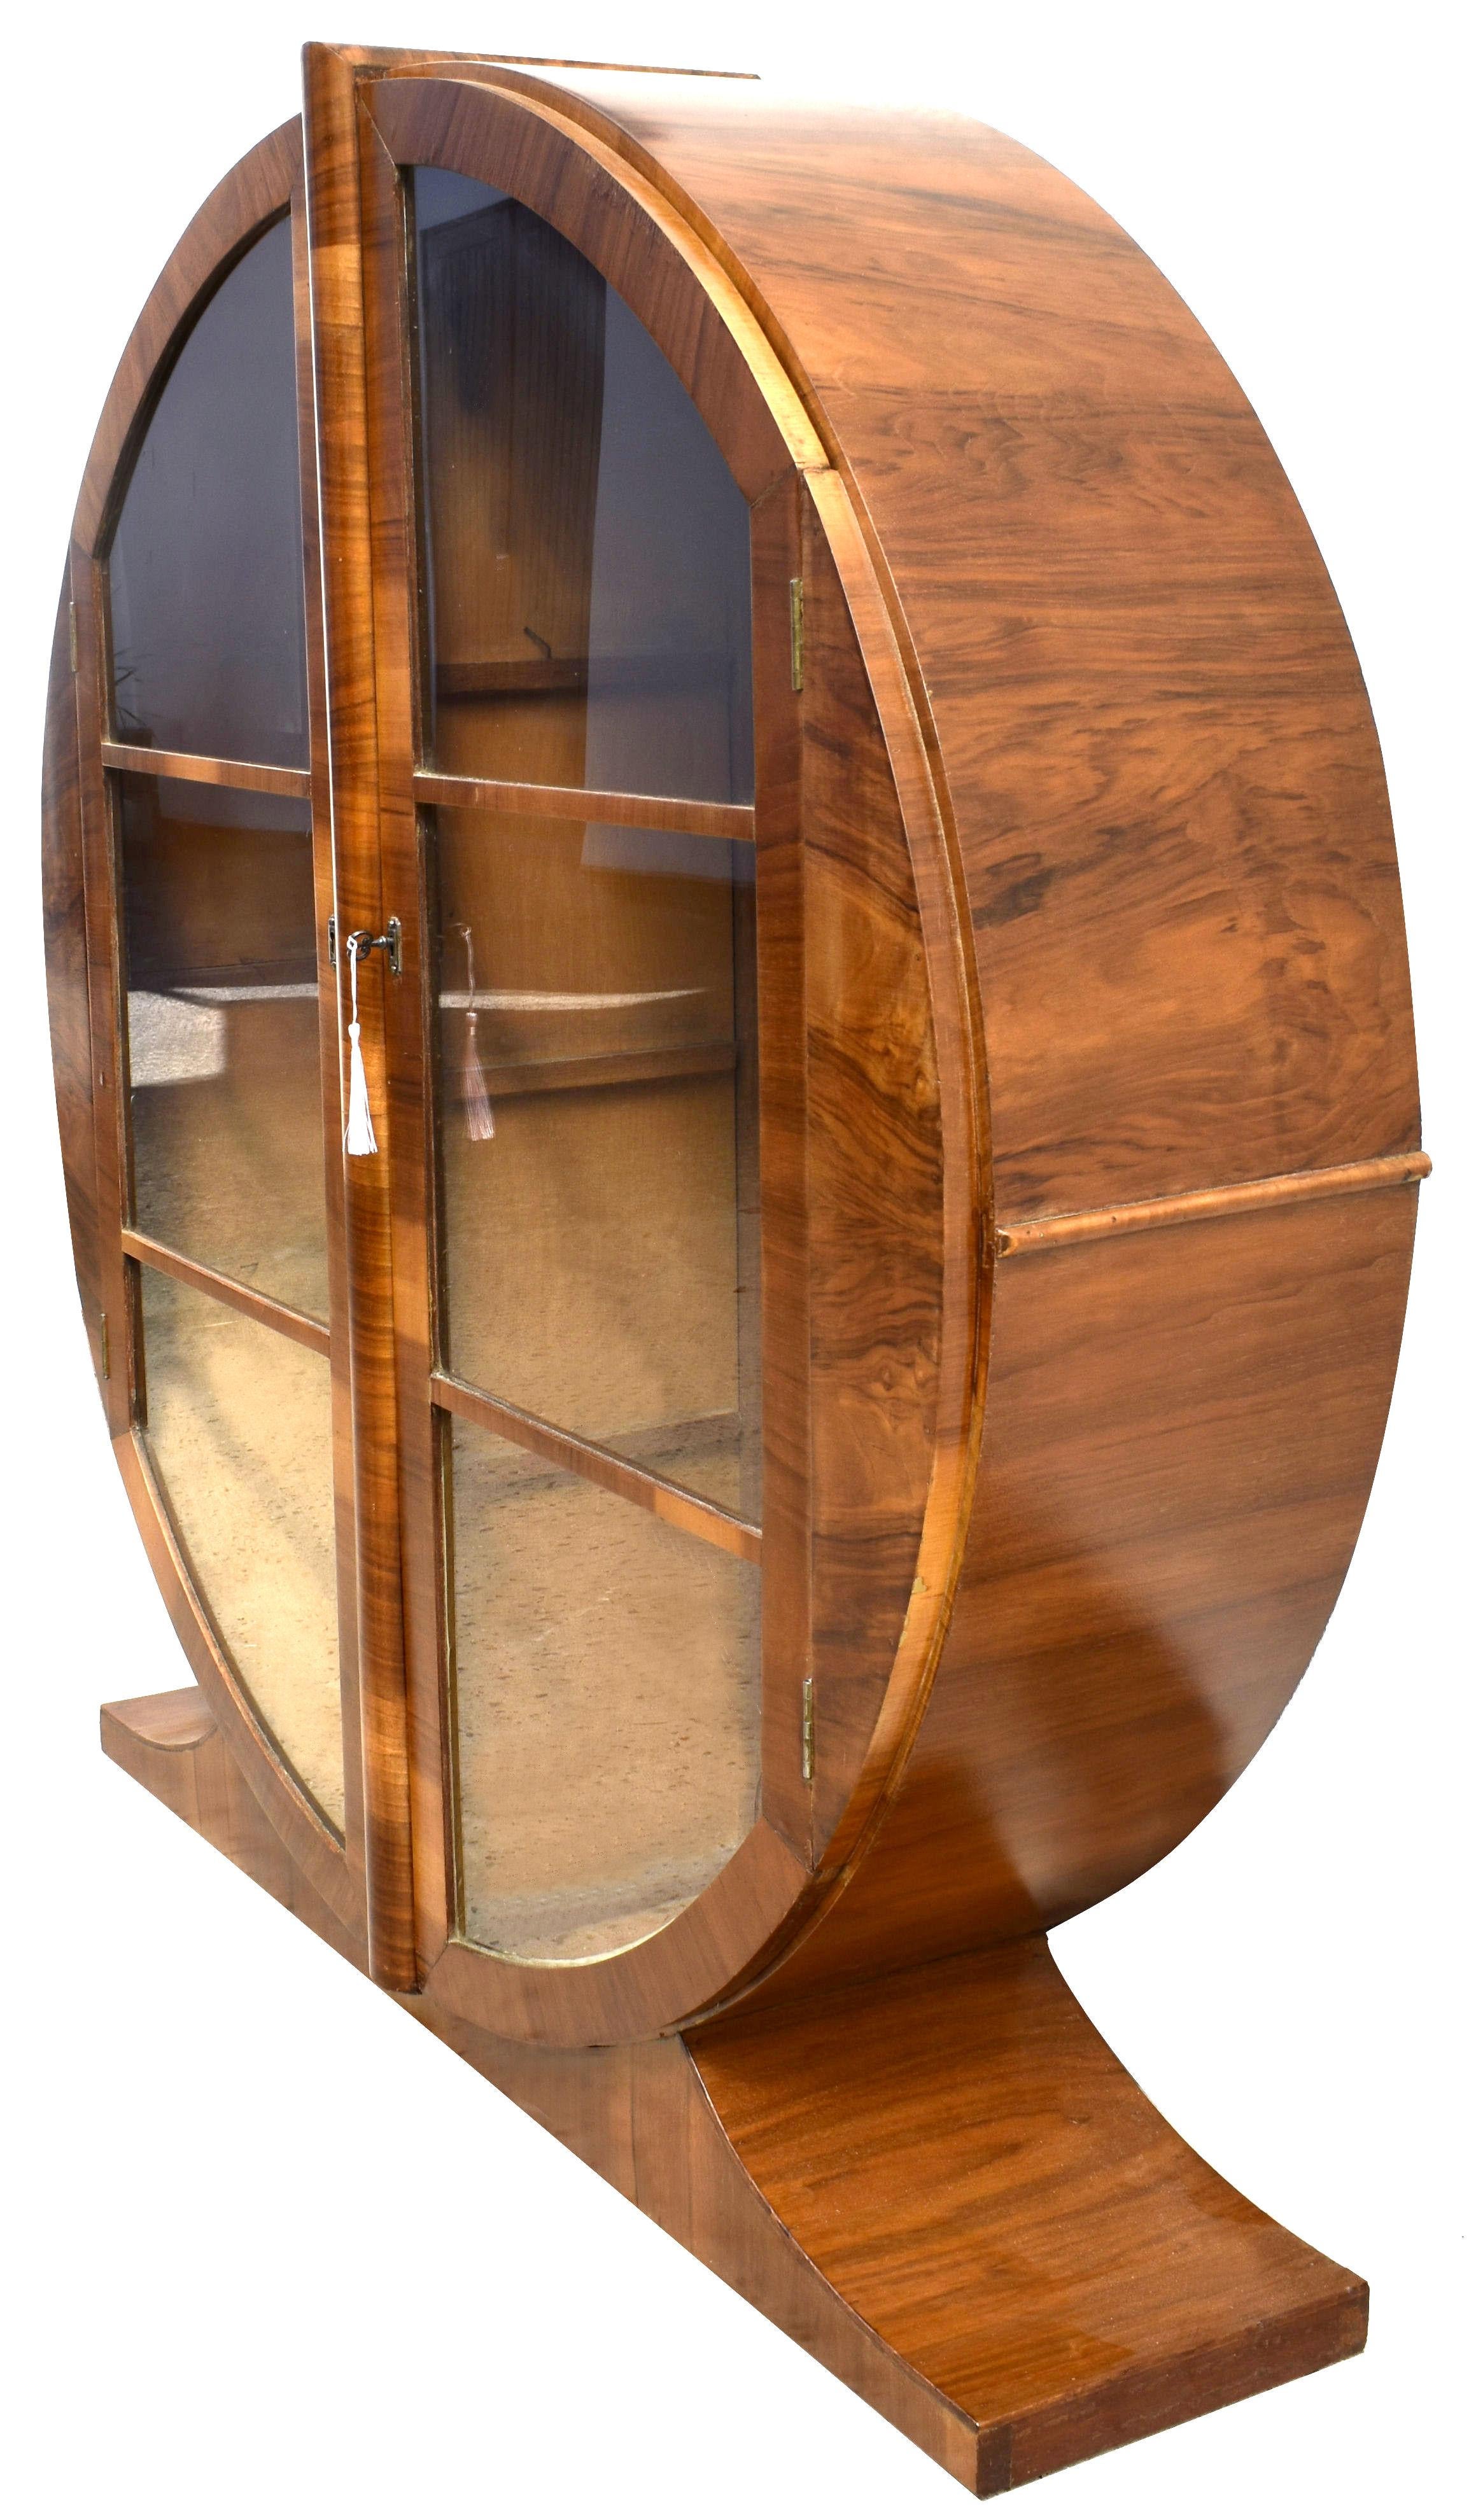 Nous vous proposons cette superbe vitrine ronde Art déco anglaise des années 1930, d'une grande élégance et d'une grande originalité. Placage de noyer figuré dans un ton moyen chaud avec une alternance claire et foncée caractéristique. L'espace